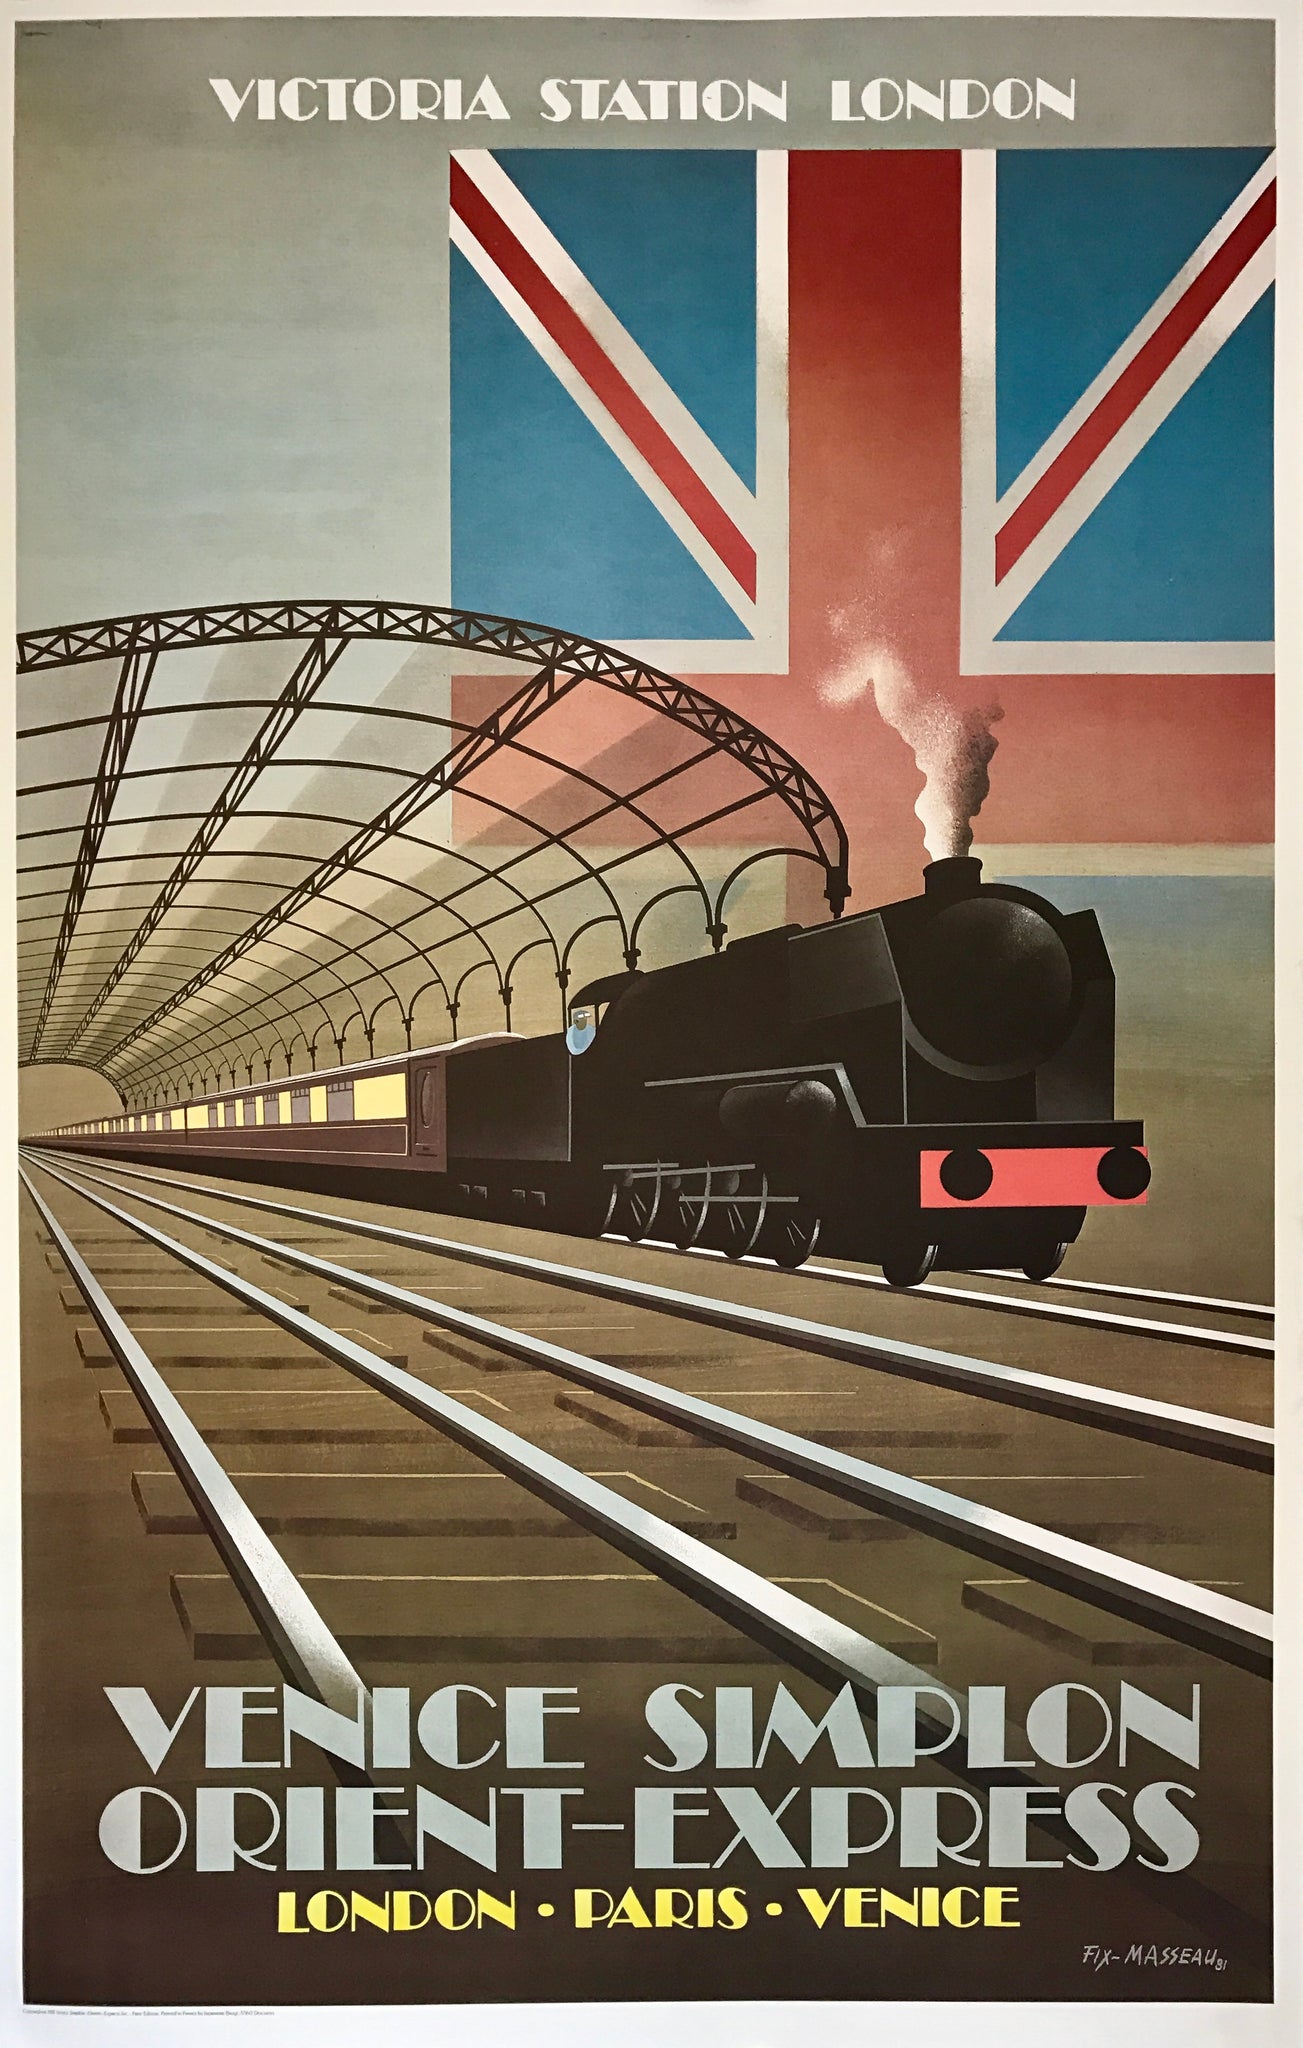 Affiche originale de 1981 réalisée par Fix-Masseau faisant la promotion de la ligne Londres-Paris-Venise.  On y voit un train qui avance avec en fond un drapeau britannique.